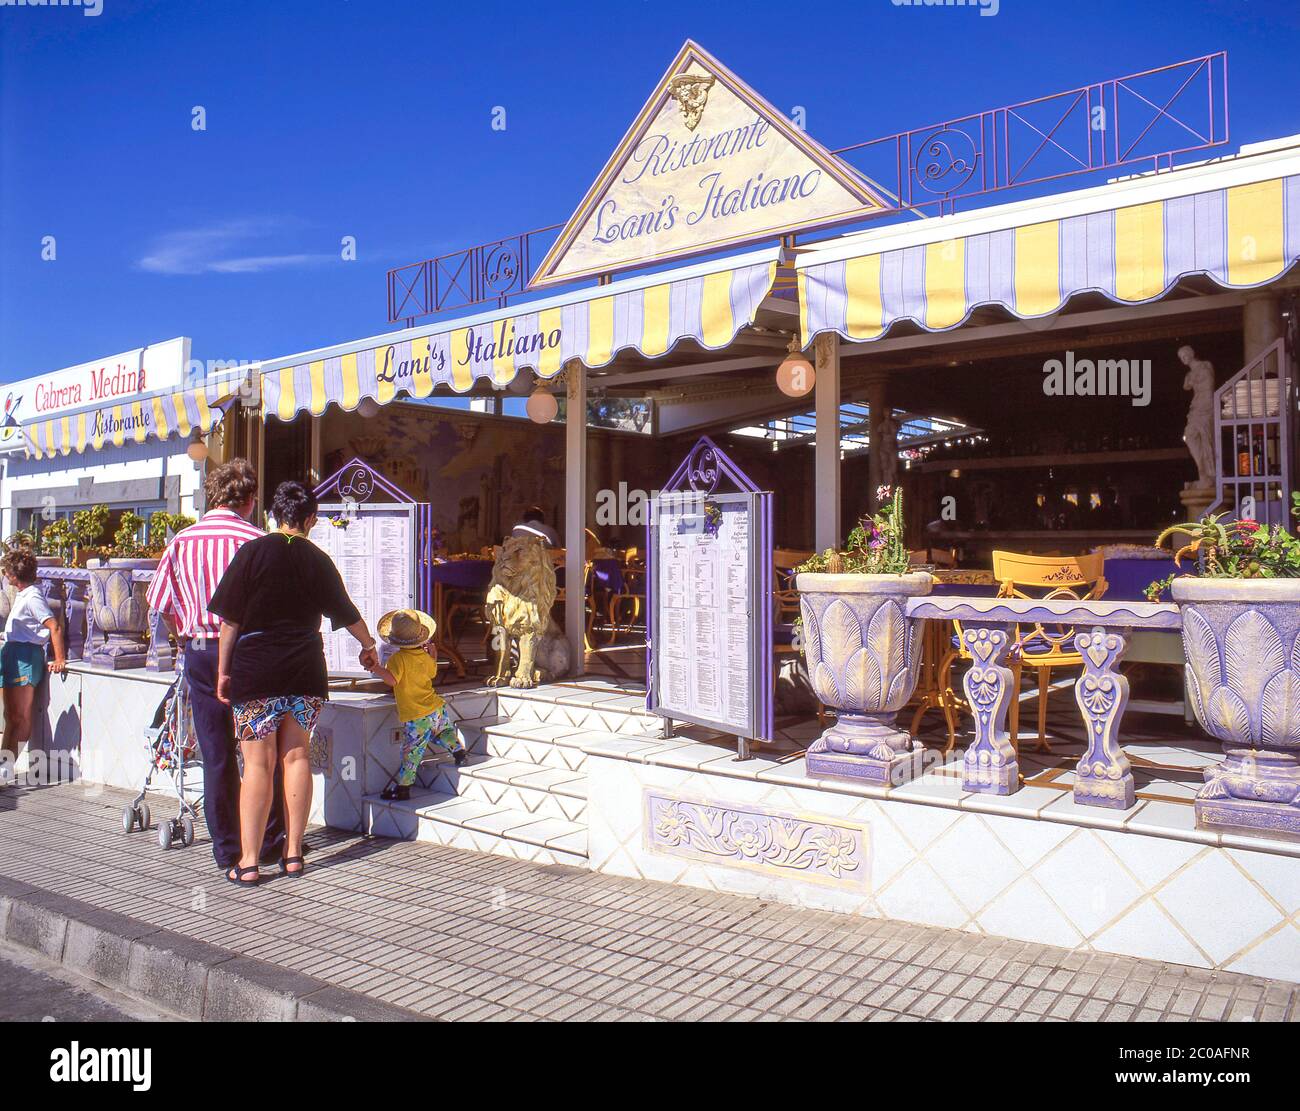 Lani's Italiano restorante, Las Playas, Puerto del Carmen, Lanzarote,  Canary Islands, Spain Stock Photo - Alamy